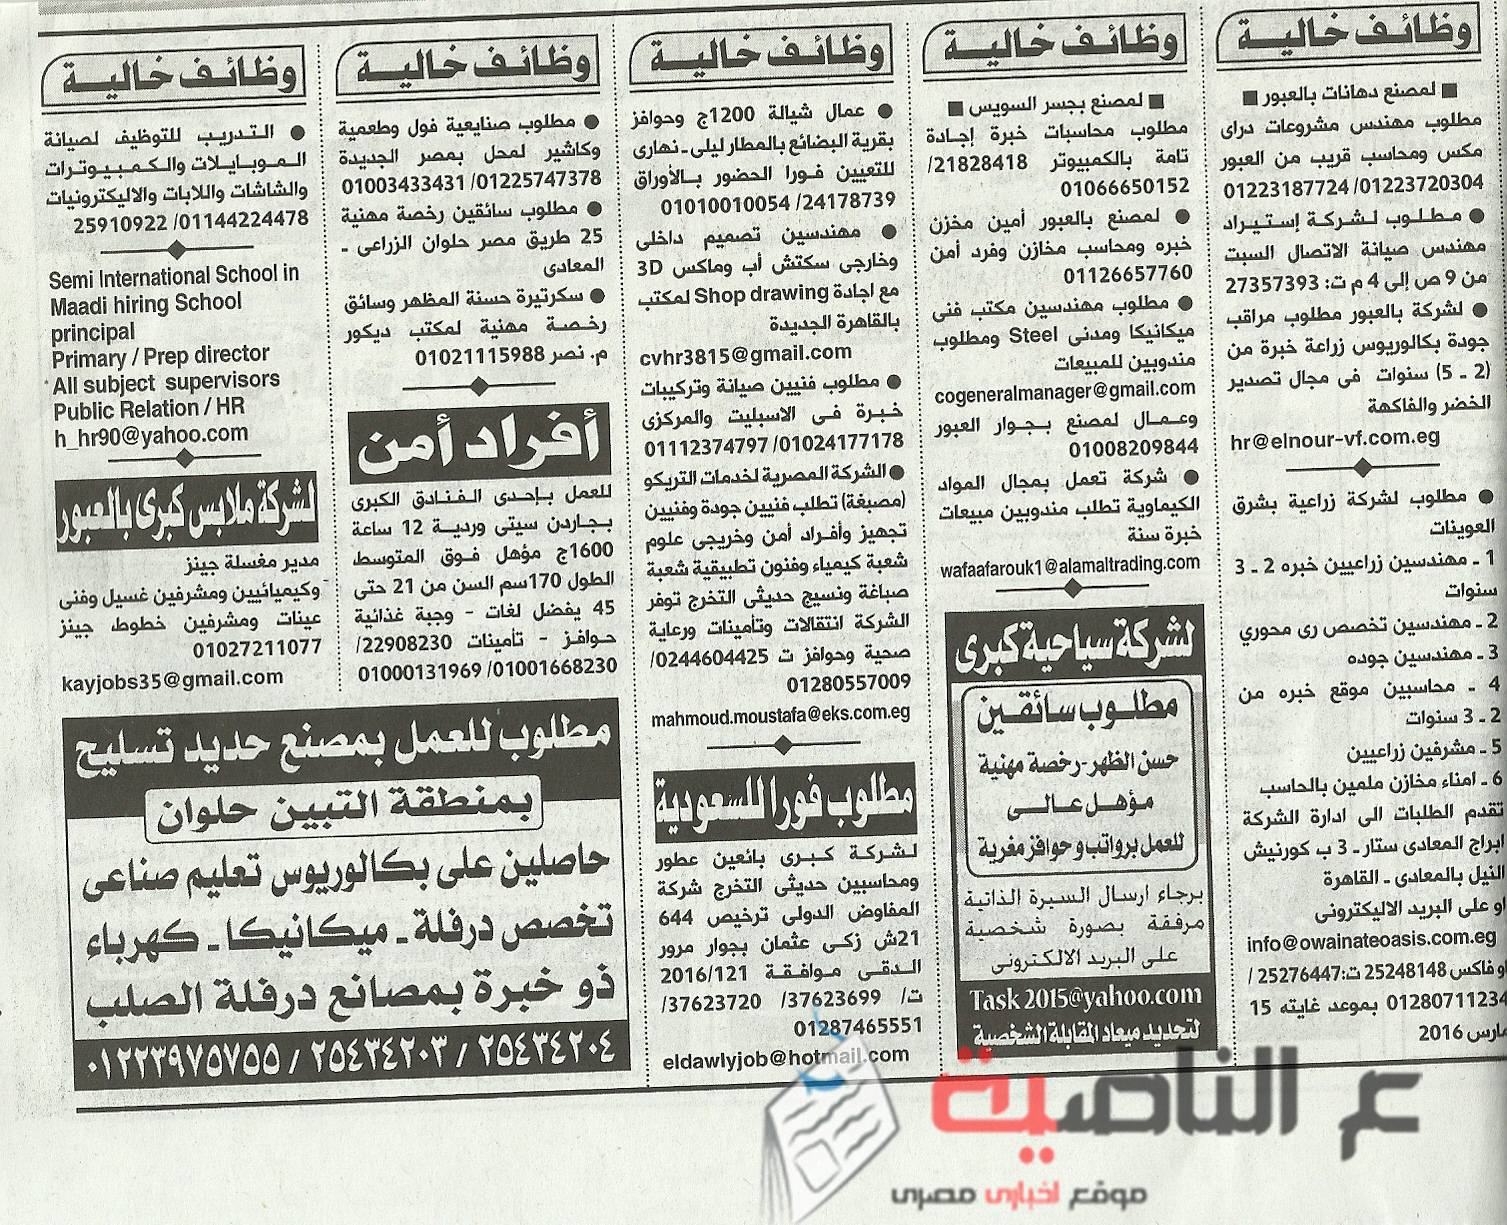 5وظائف جريدة الأهرام 3-4-2016